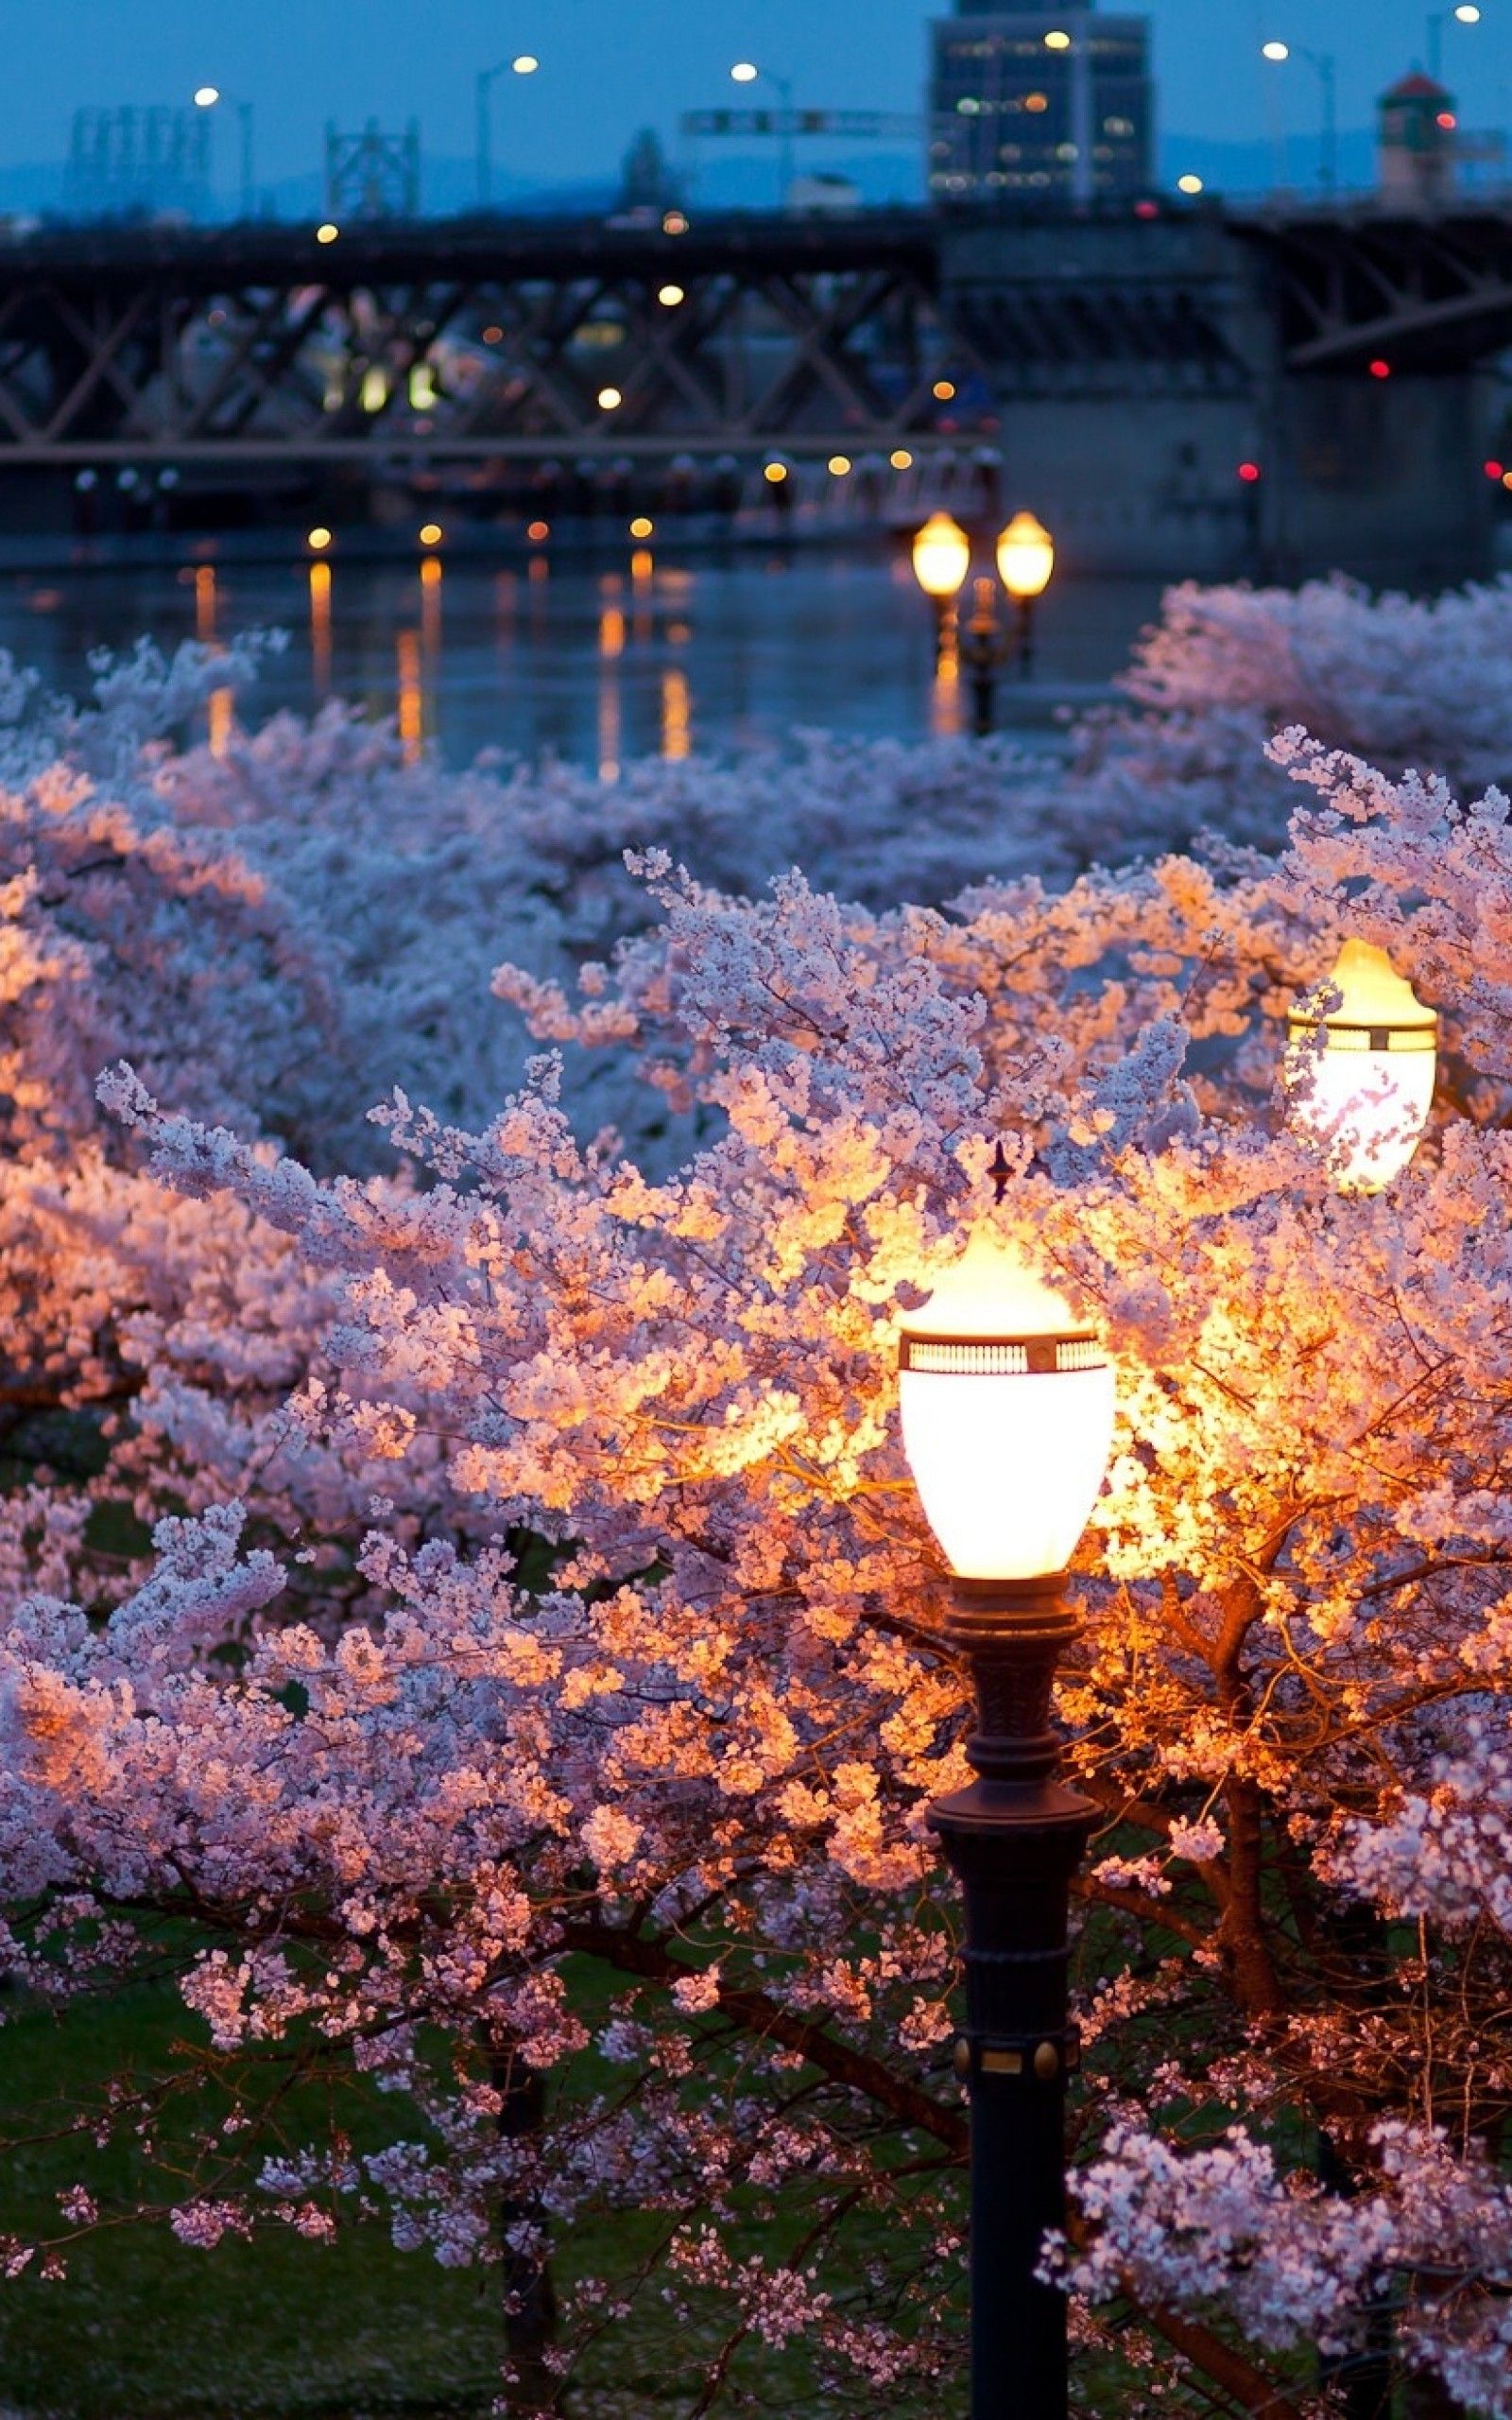 عکس شکوفه های سفید صورتی فصل بهار در شب زیبای خیابان